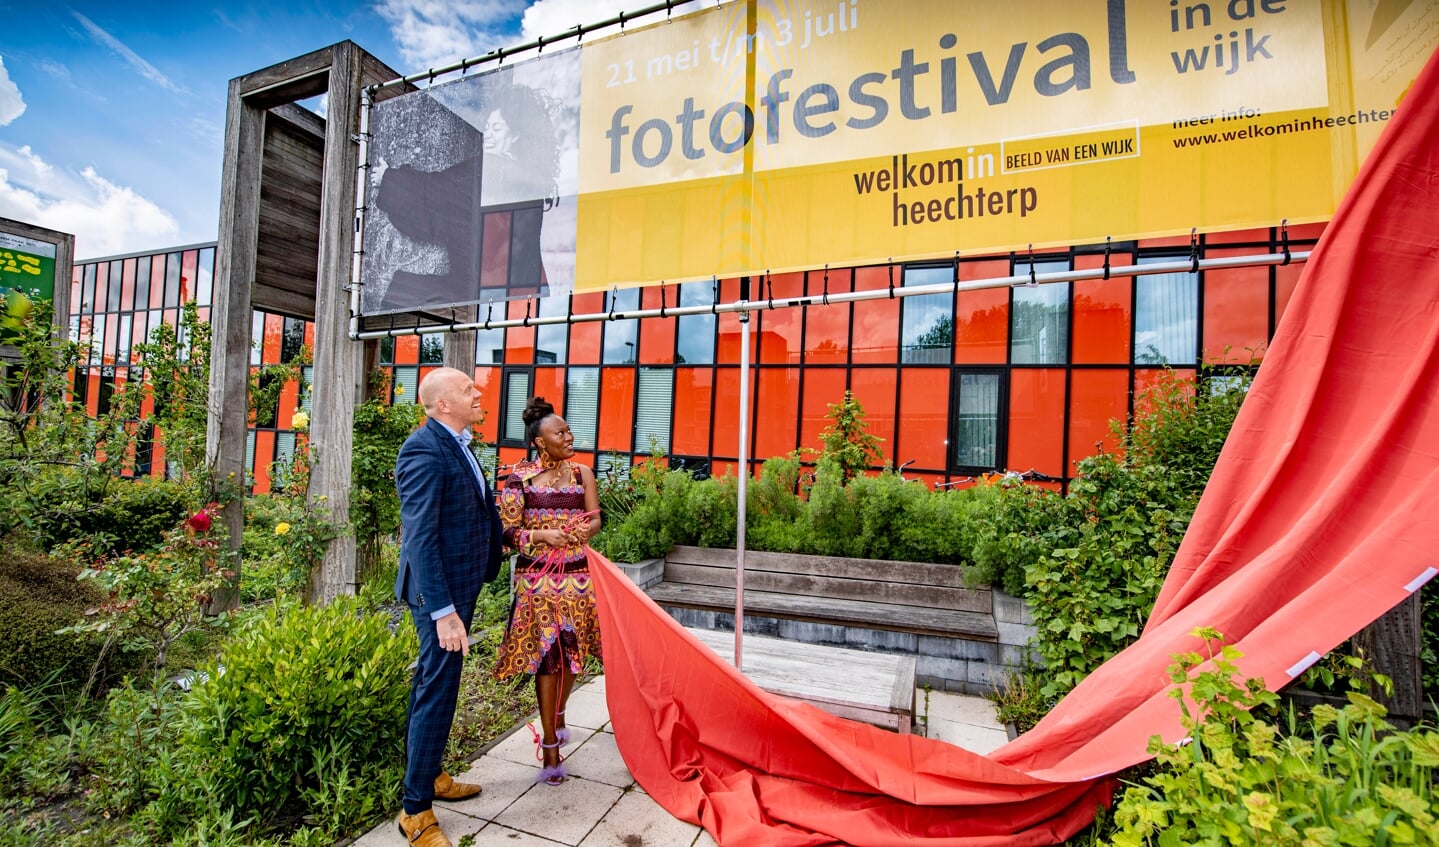 ©Foto: Hoge Noorden / Jacob Van Essen

21–05-2022
Fotofestival
Welkom in Heechterp
Beeld van een Wijk
Opening door oa wethouder Hein de Haan van de gemeente Leeuwarden